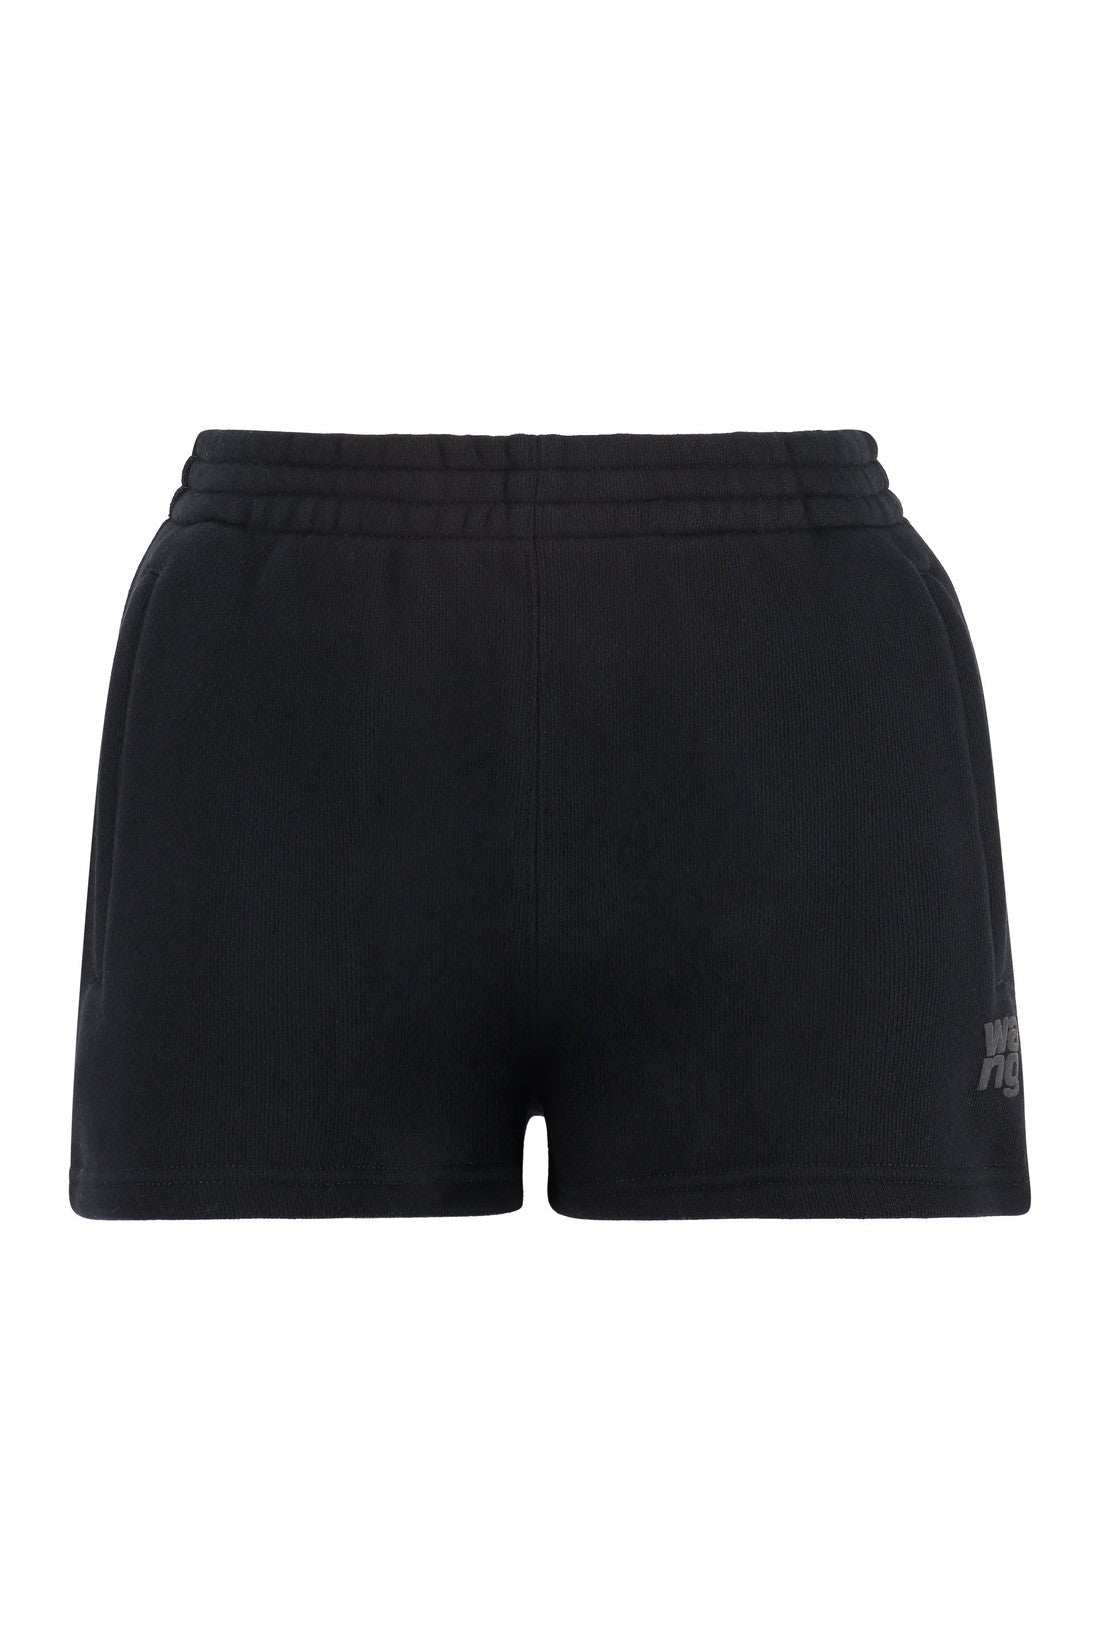 Alexander Wang-OUTLET-SALE-Cotton shorts-ARCHIVIST